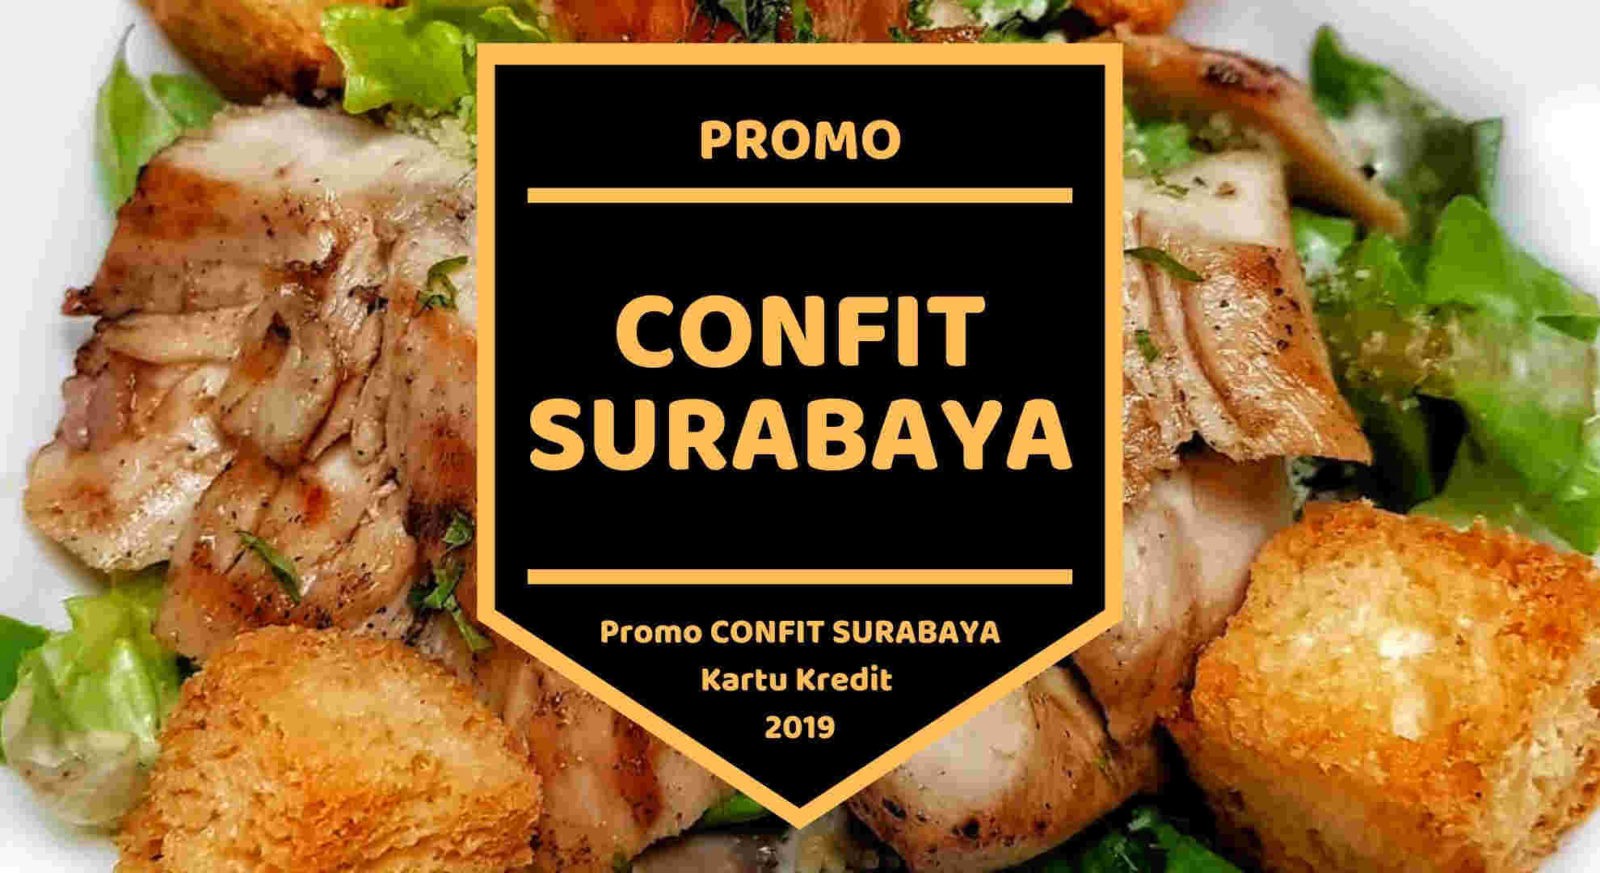 Promo Confit Surabaya